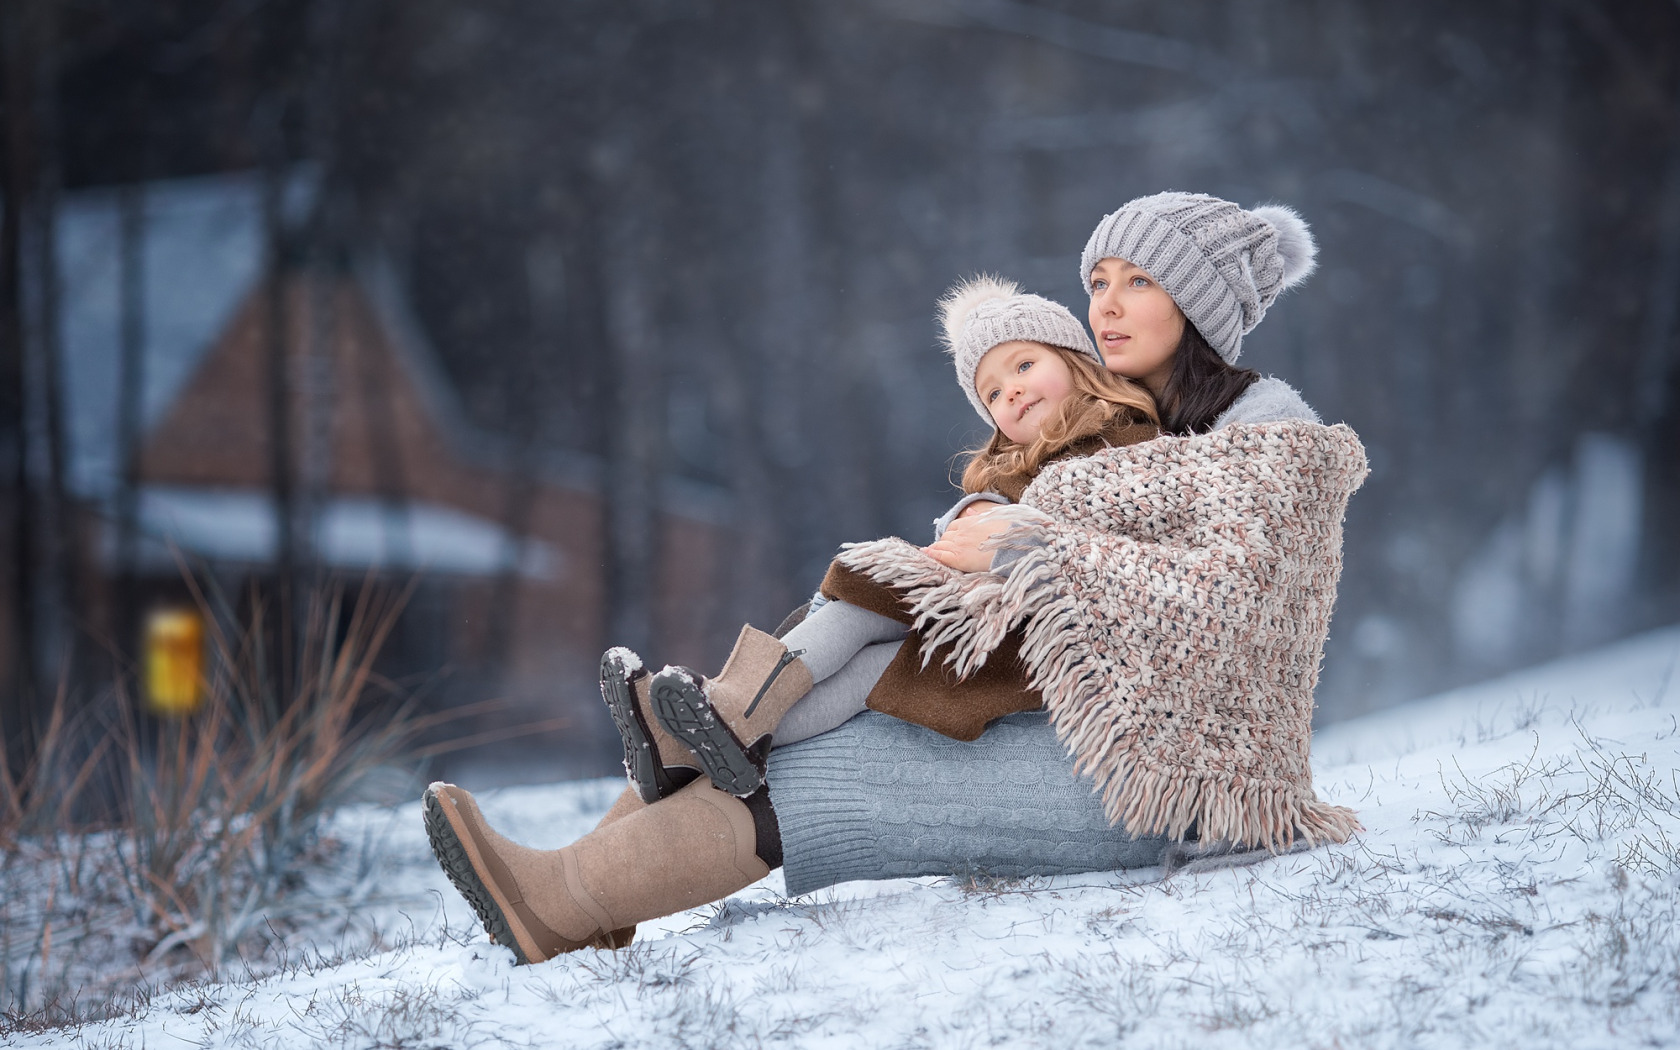 Зимняя фотосессия. Девочка зимой. Девушка с ребенком зимой. Зима для детей.